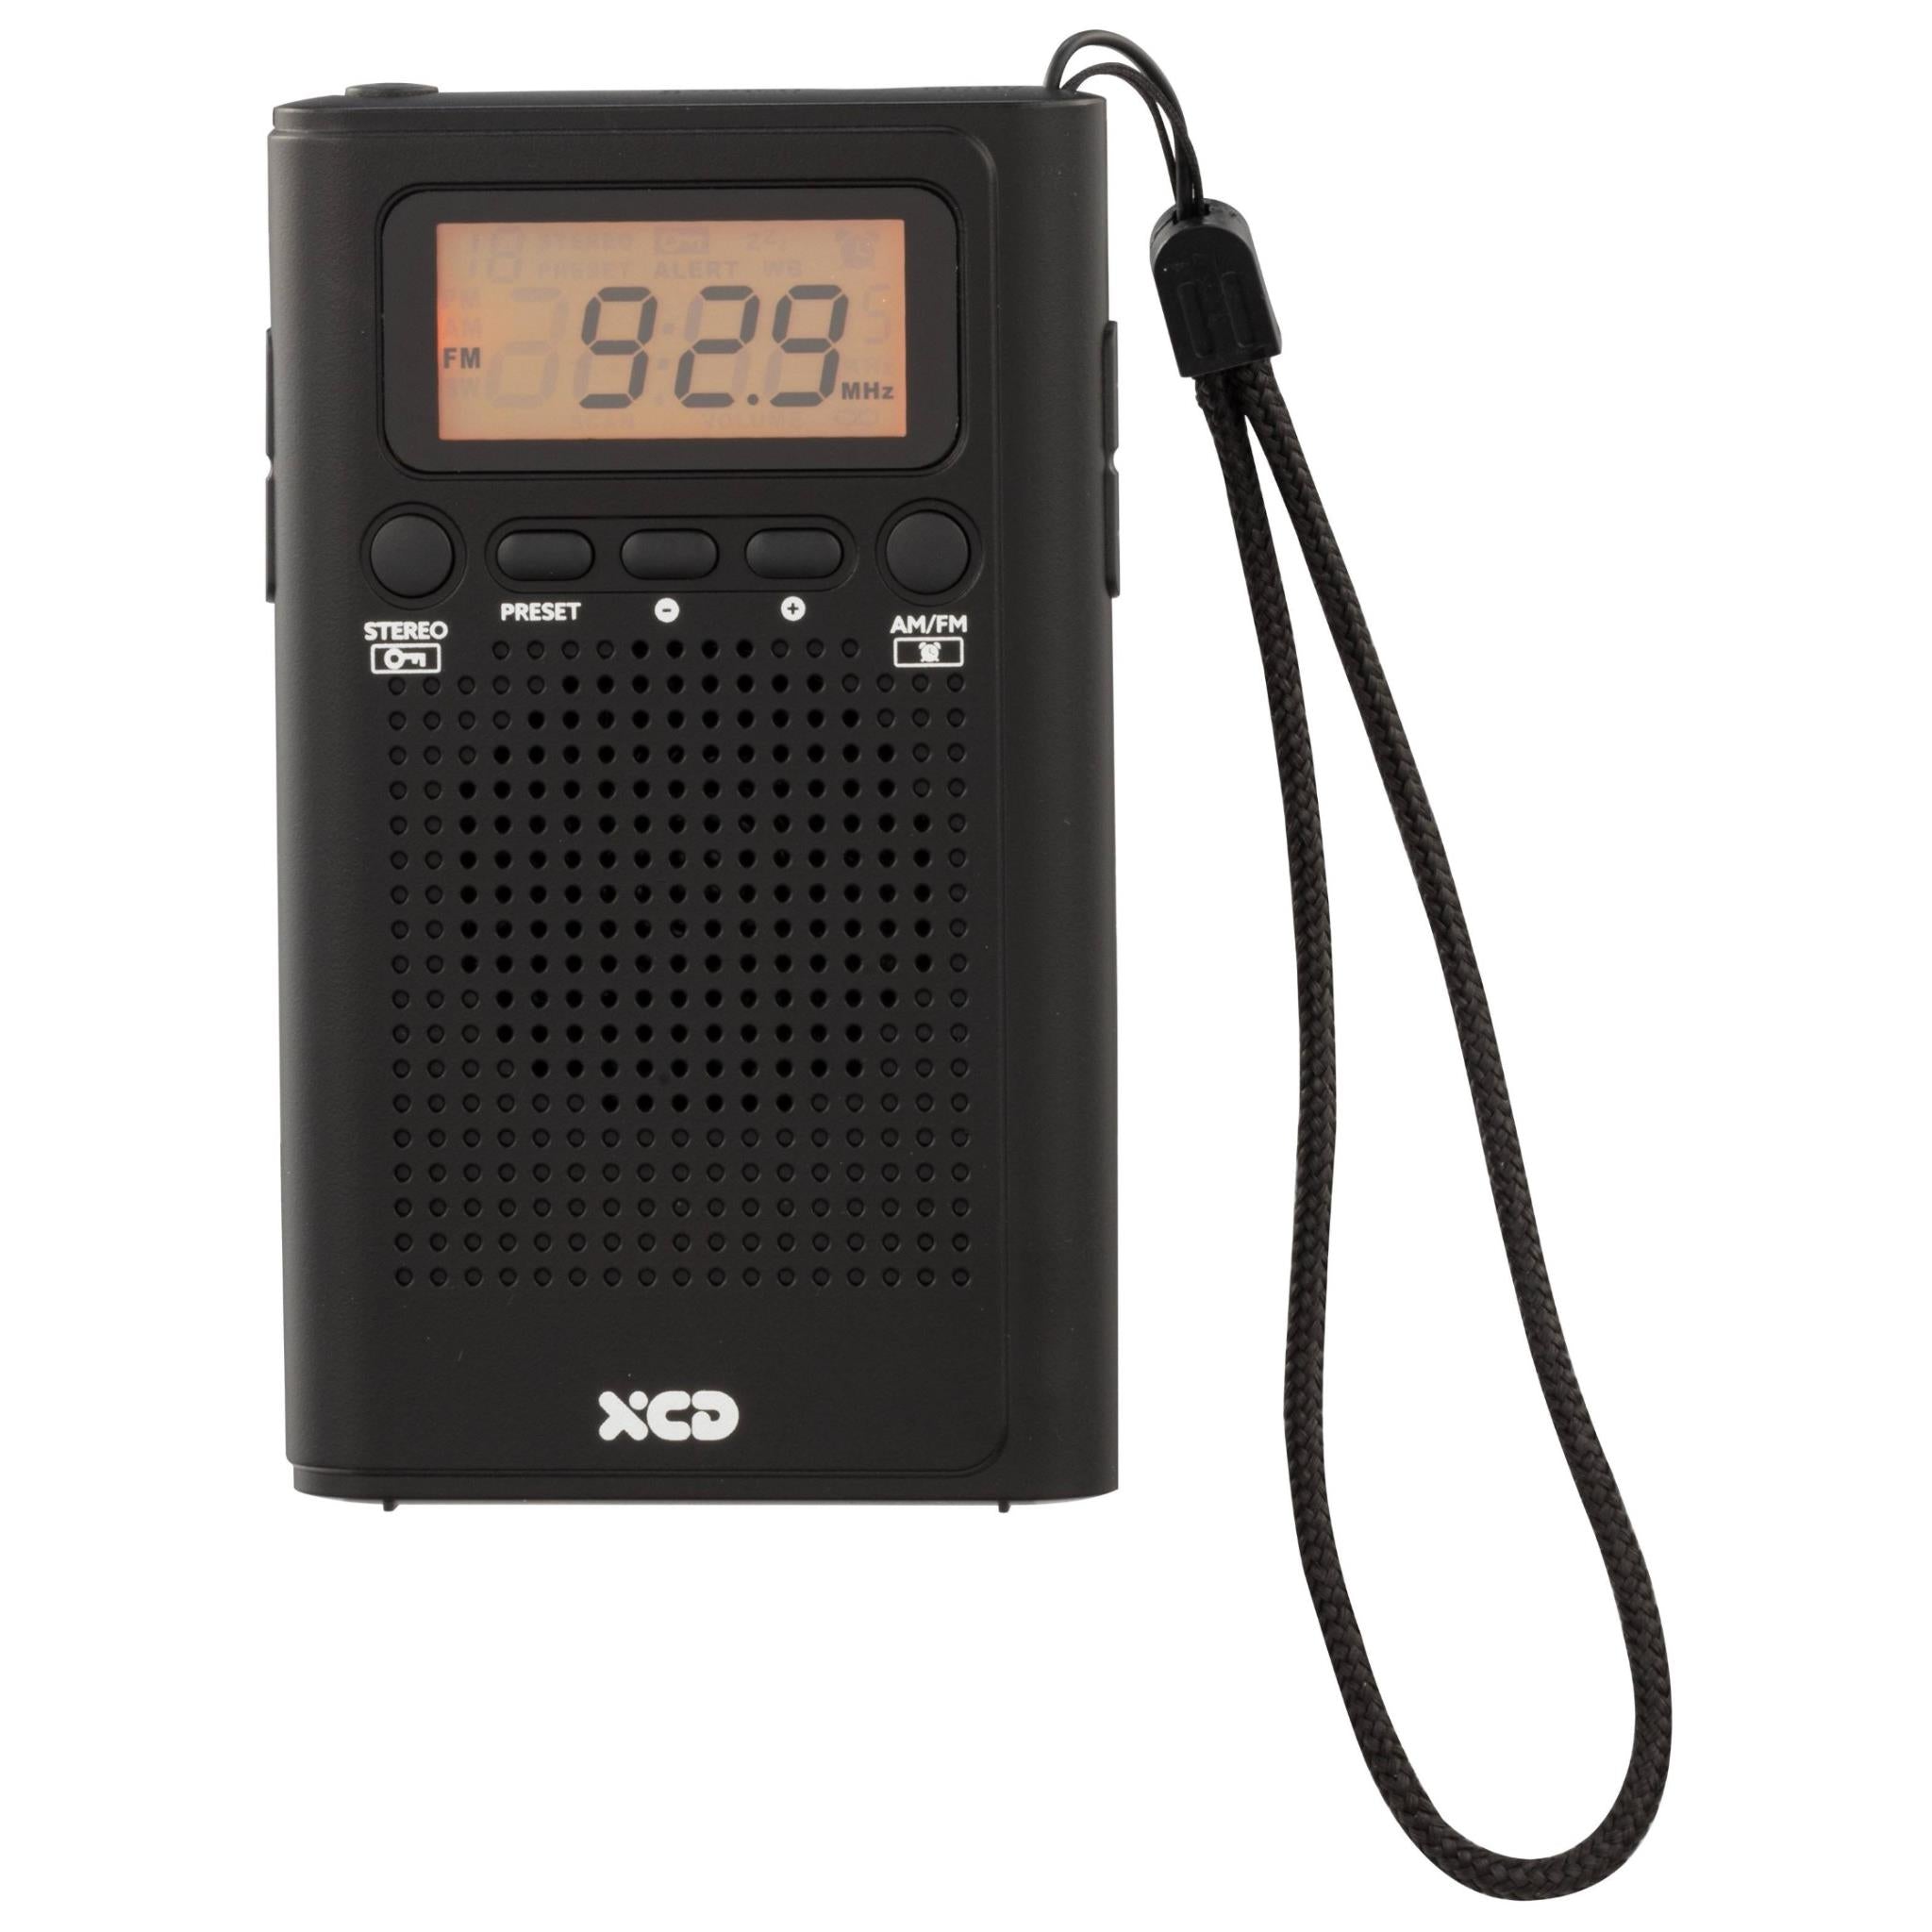 xcd portable digital am/fm radio